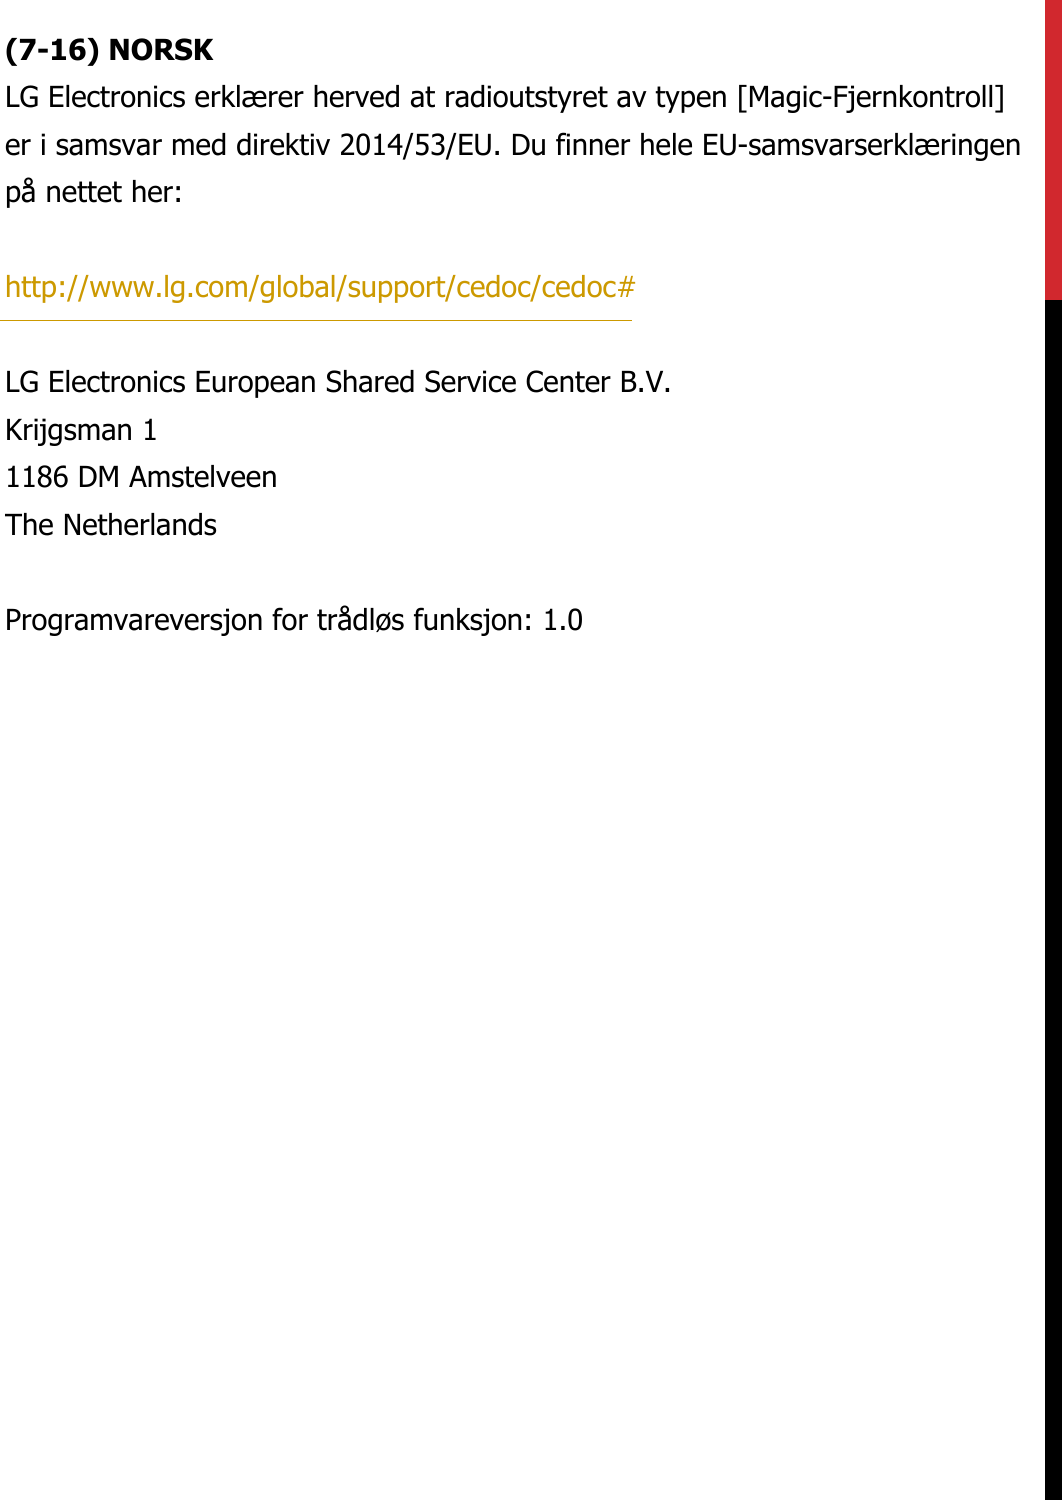 (7-16) NORSKLG Electronics erklærer herved at radioutstyret av typen [Magic-Fjernkontroll] er i samsvar med direktiv 2014/53/EU. Du finner hele EU-samsvarserklæringen på nettet her:   http://www.lg.com/global/support/cedoc/cedoc#   LG Electronics European Shared Service Center B.V.  Krijgsman 1  1186 DM Amstelveen  The Netherlands   Programvareversjon for trådløs funksjon: 1.0